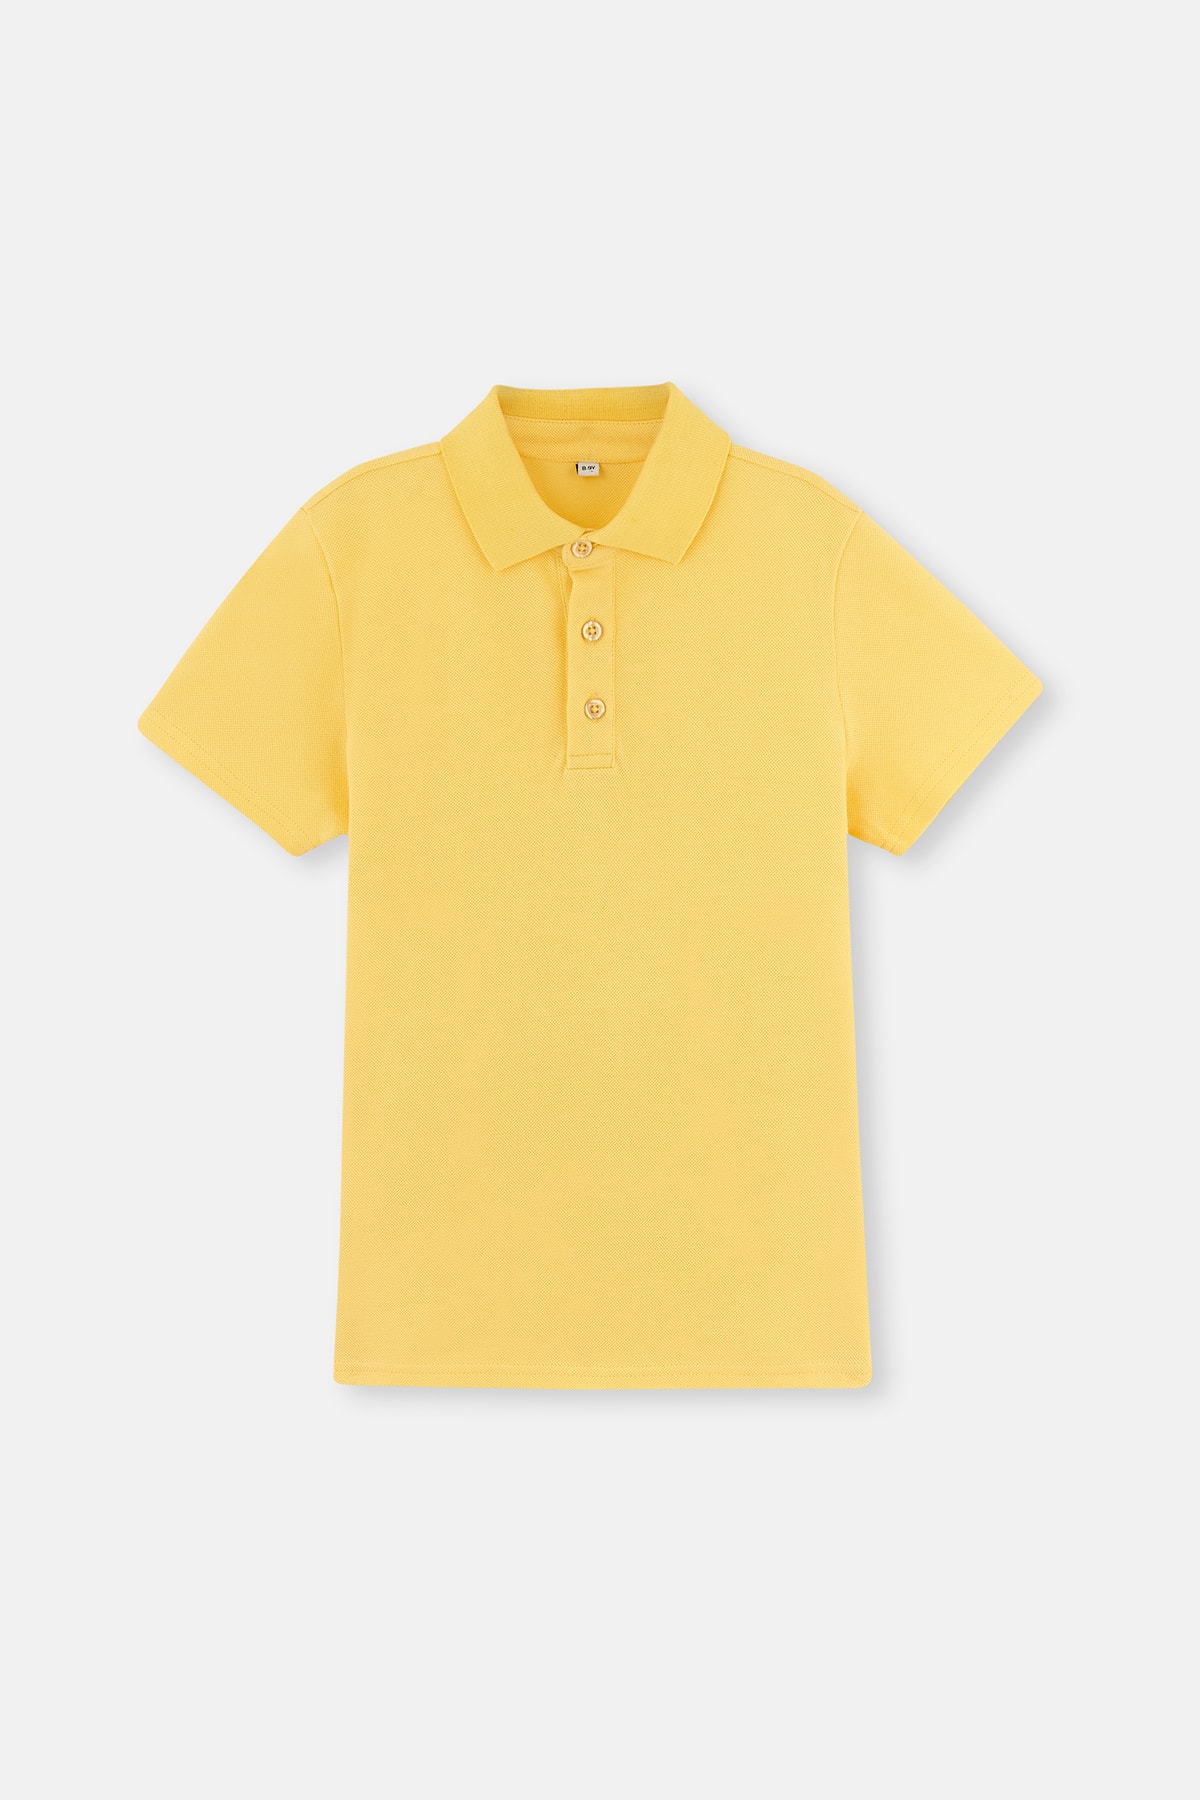 Dagi Yellow Pique Polo Neck T-Shirt